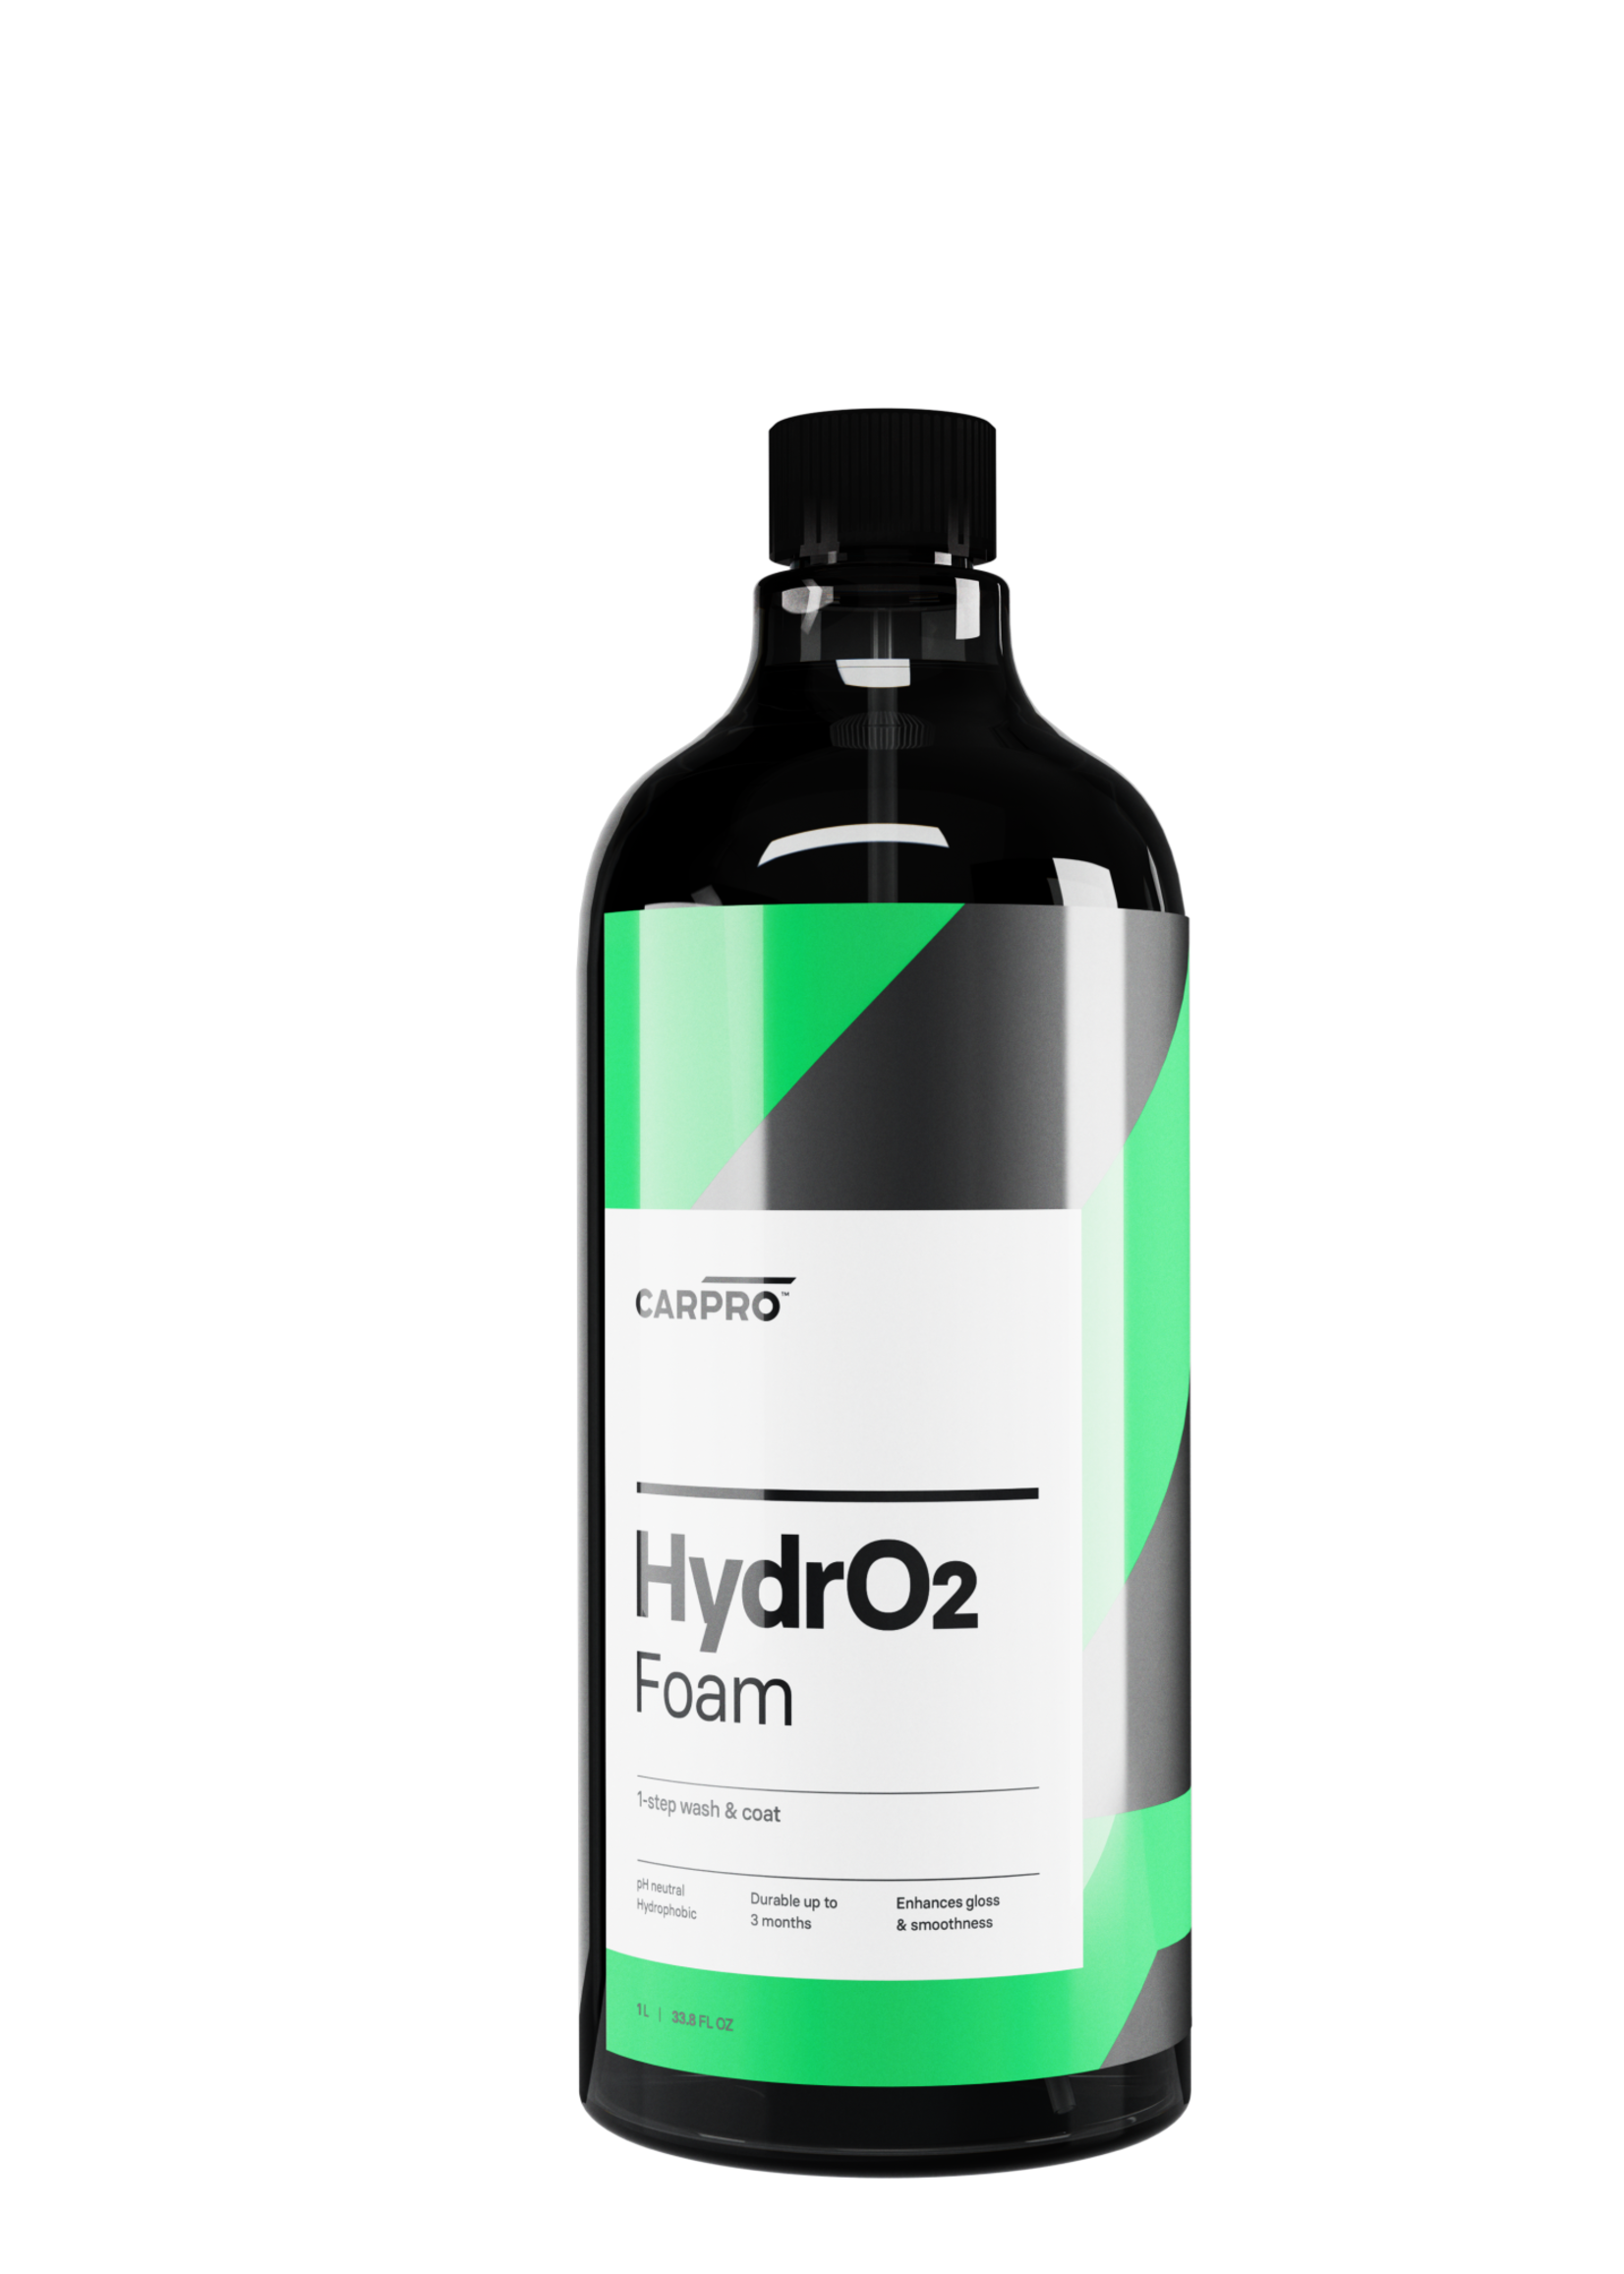 CARPRO HydrO2 Foam Soap & Sealant in One